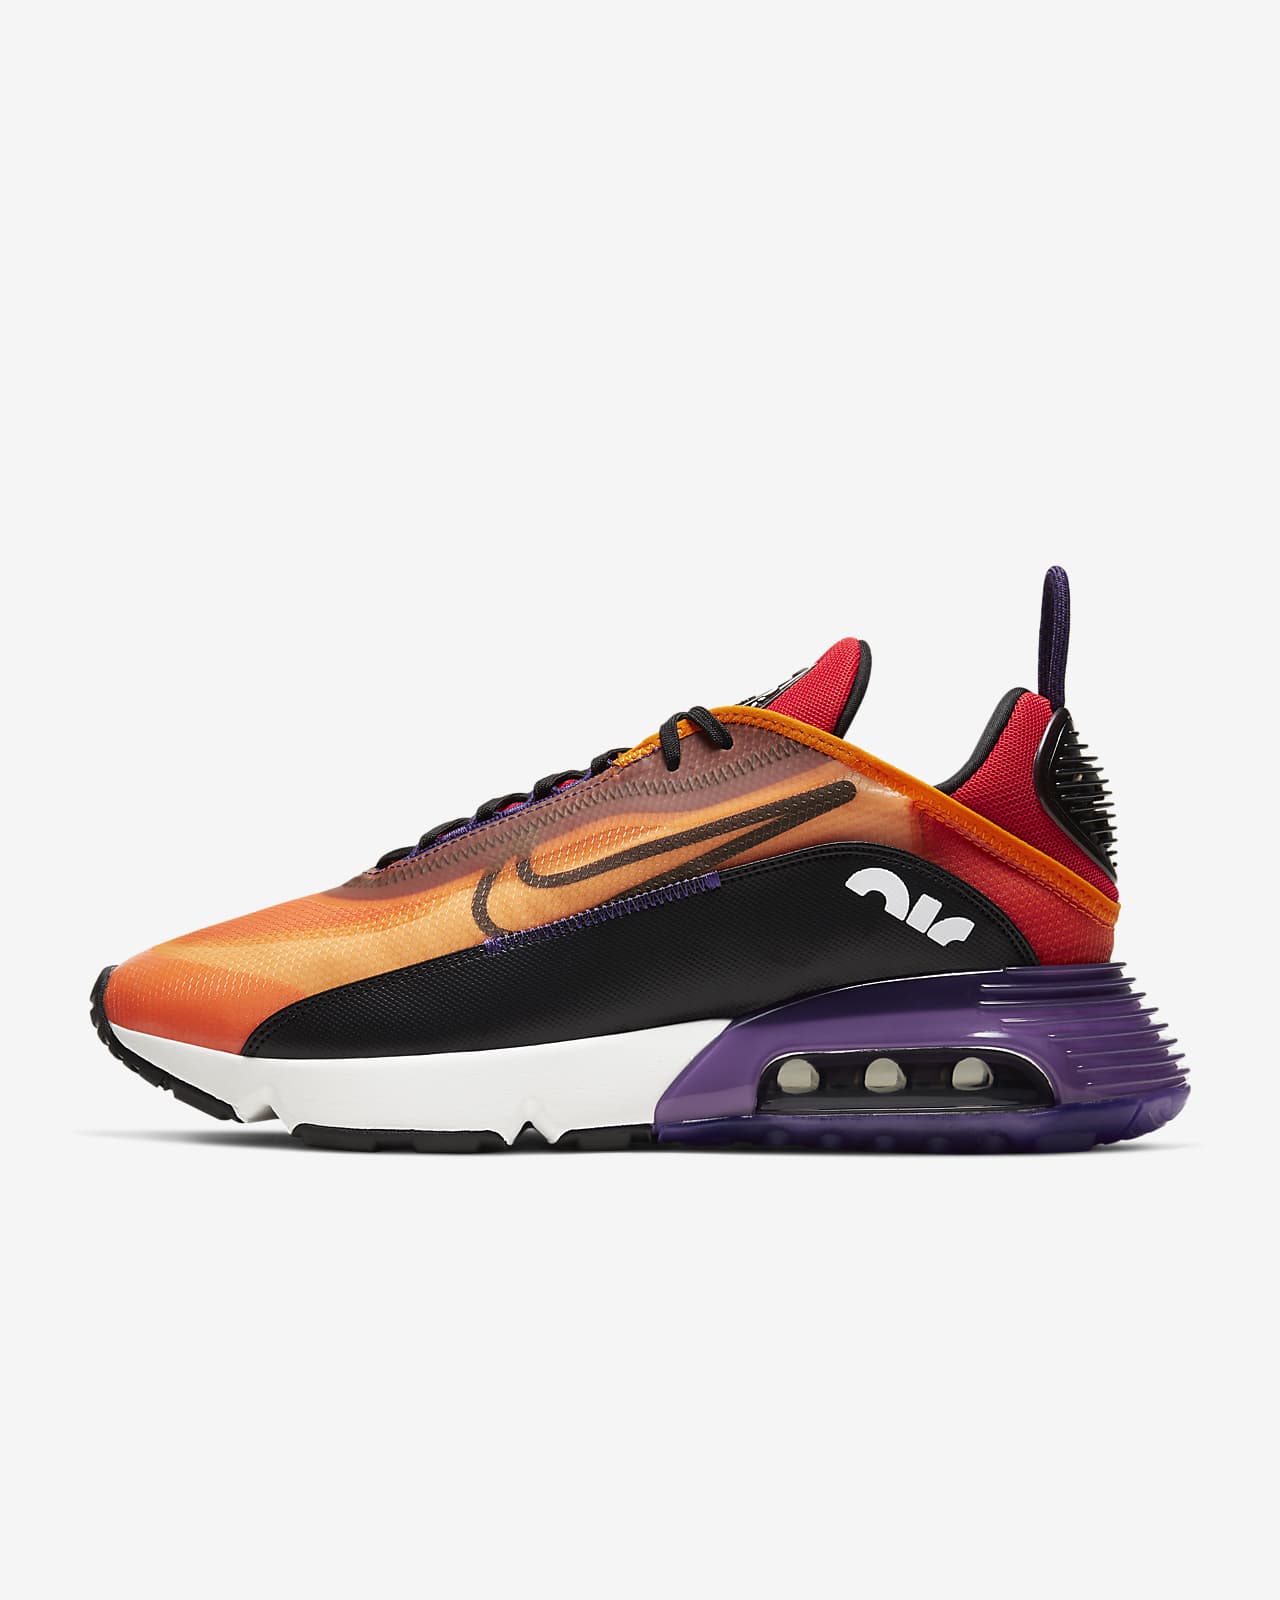 air max 2090 orange and purple